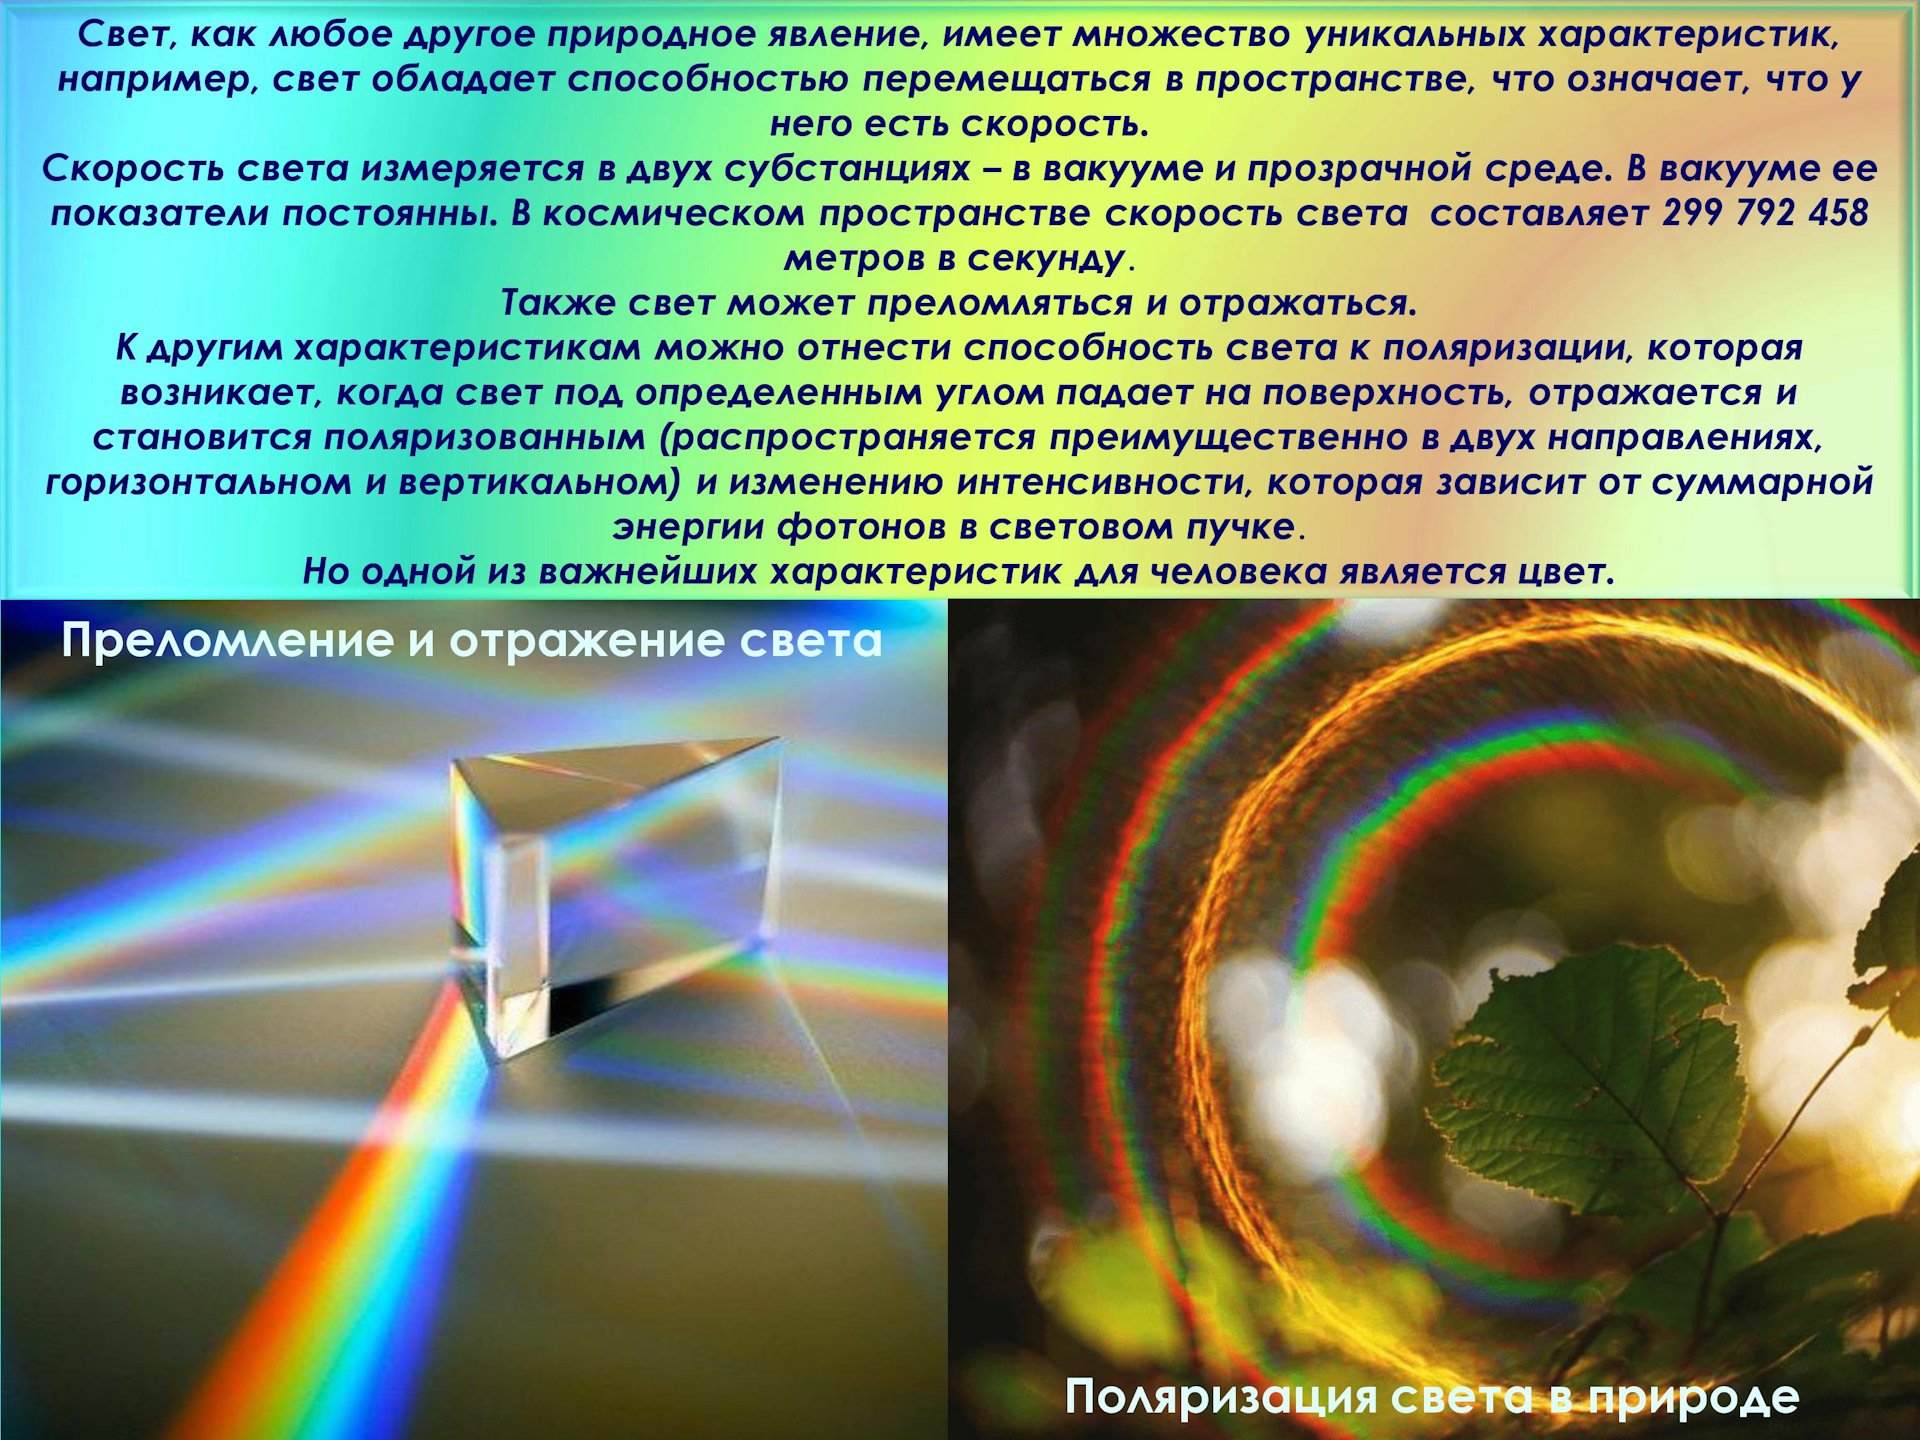 Электромагнитная природа света преломление света. Физическая природа света. Природа света физика. Поляризация света в природе. Электромагнитная природа света.